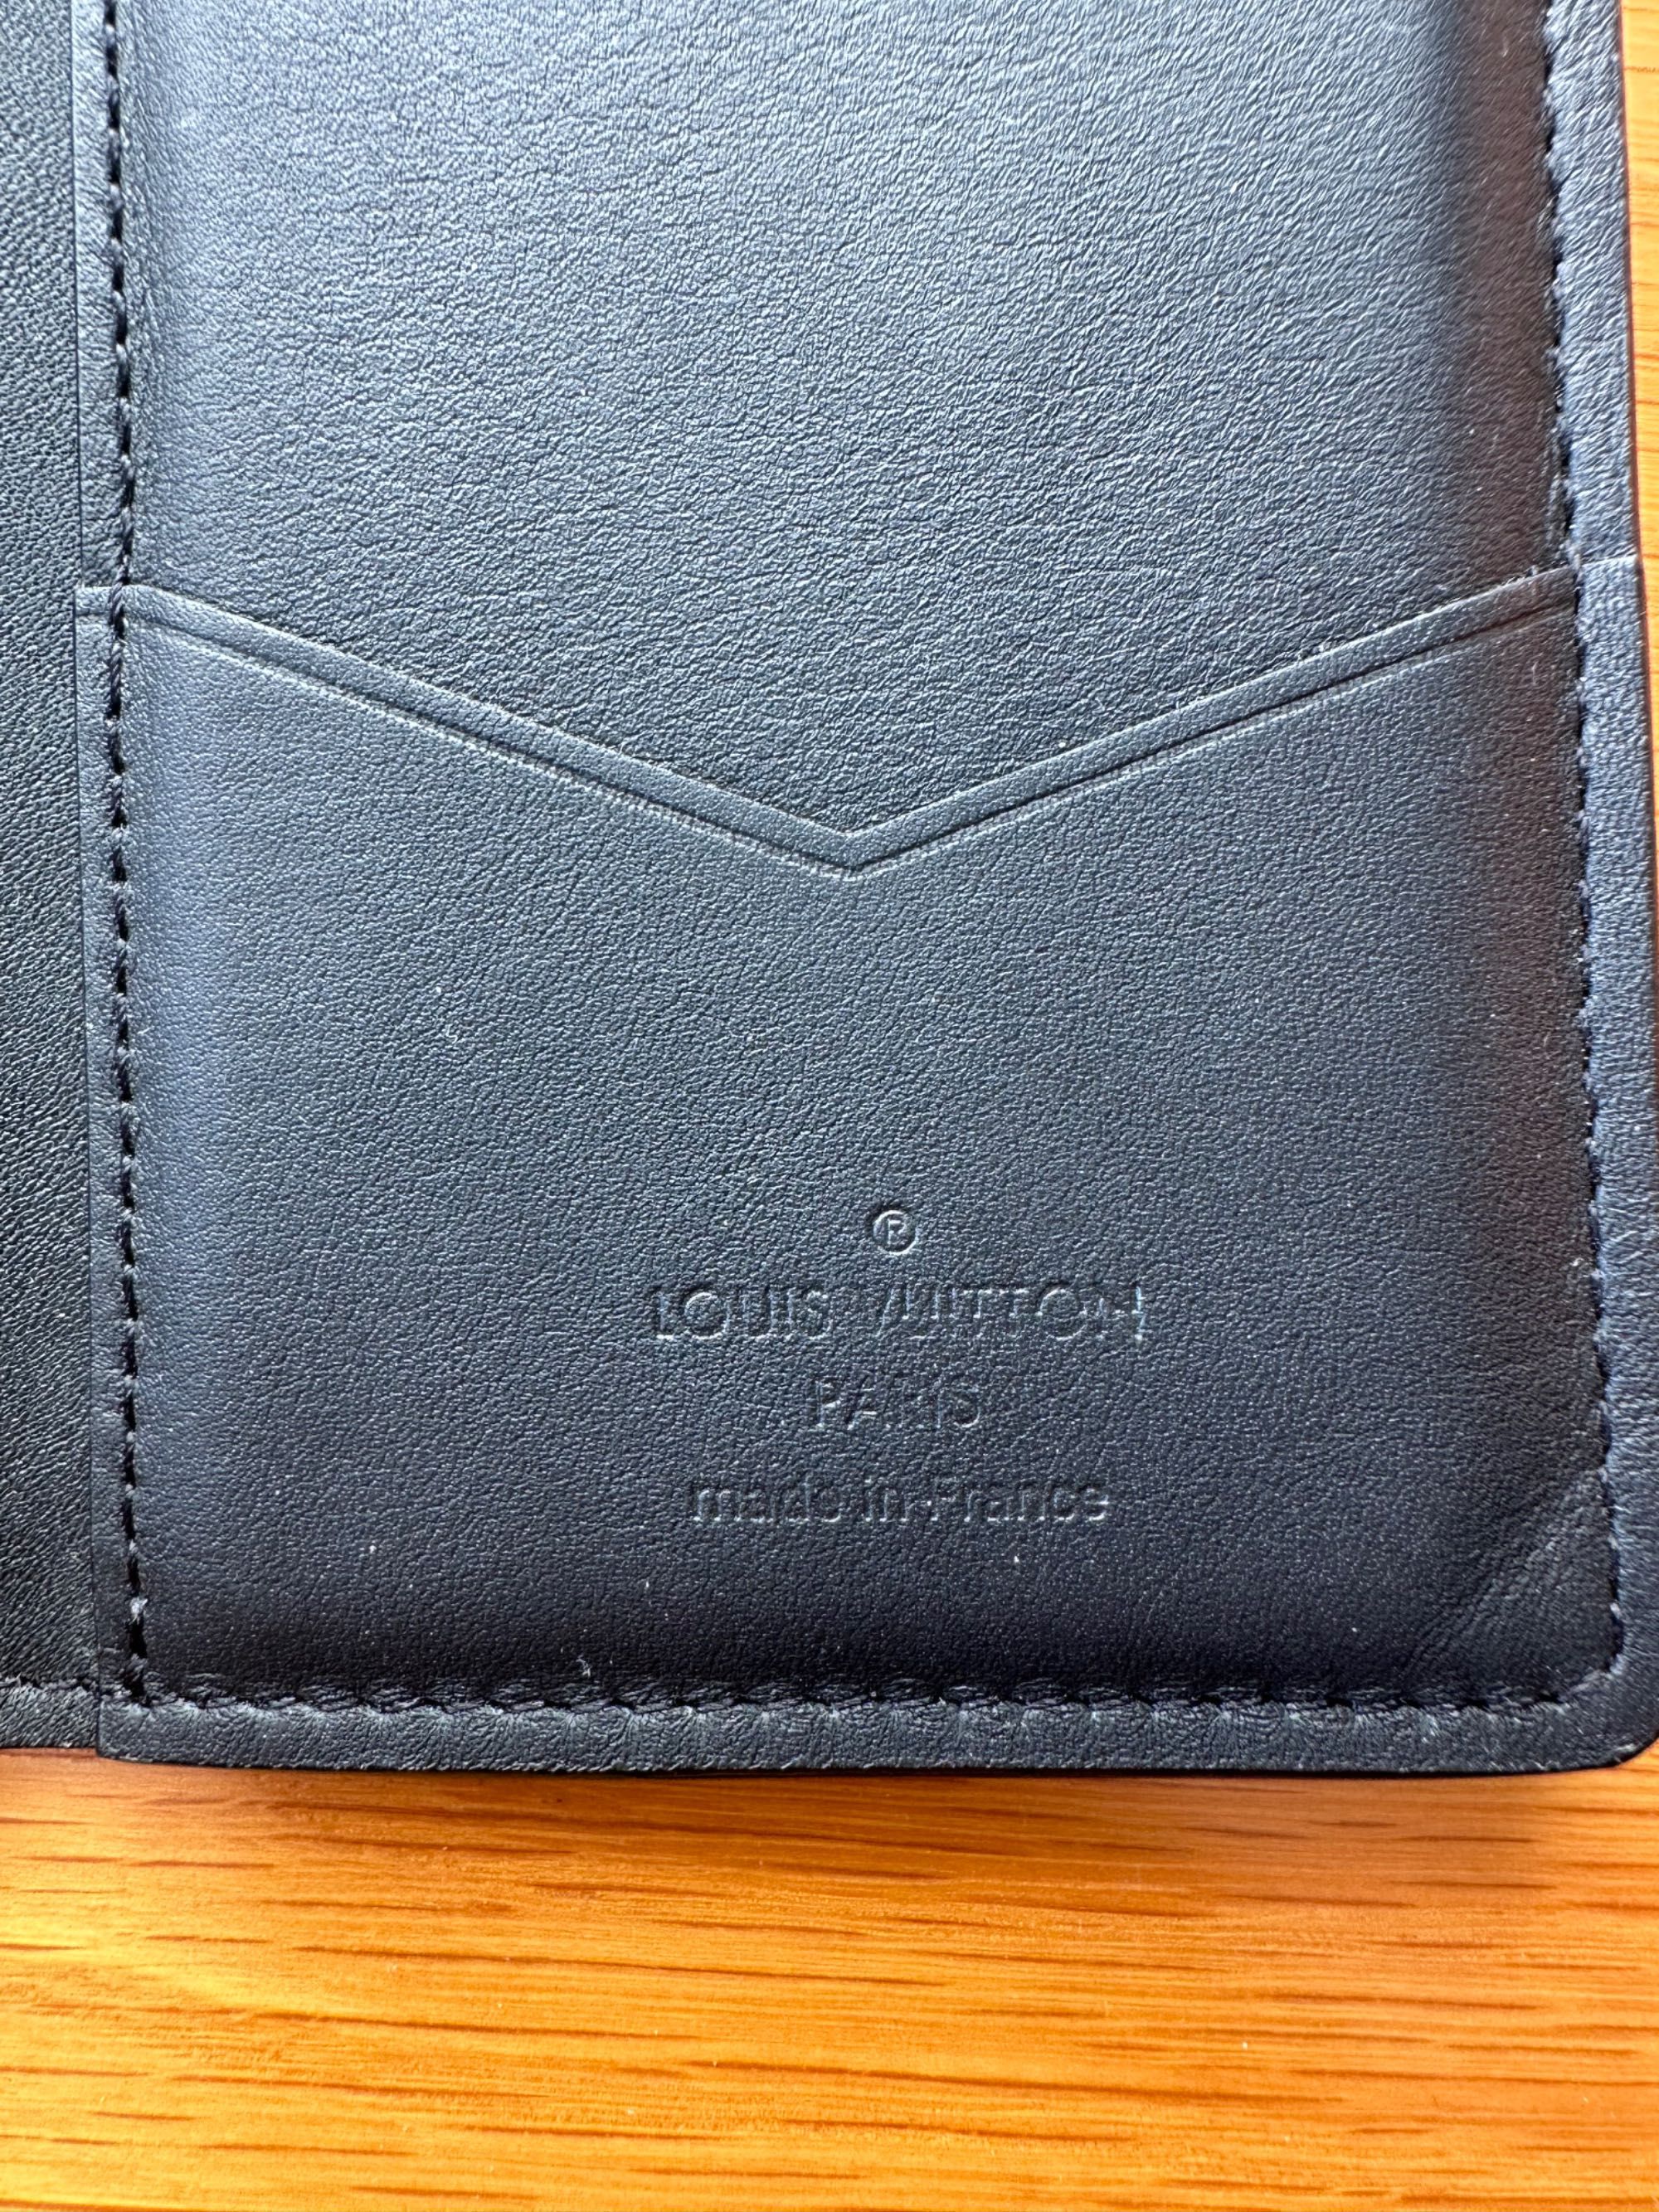 Carteira Louis Vuitton Pocket Organizer M62899 em pele.